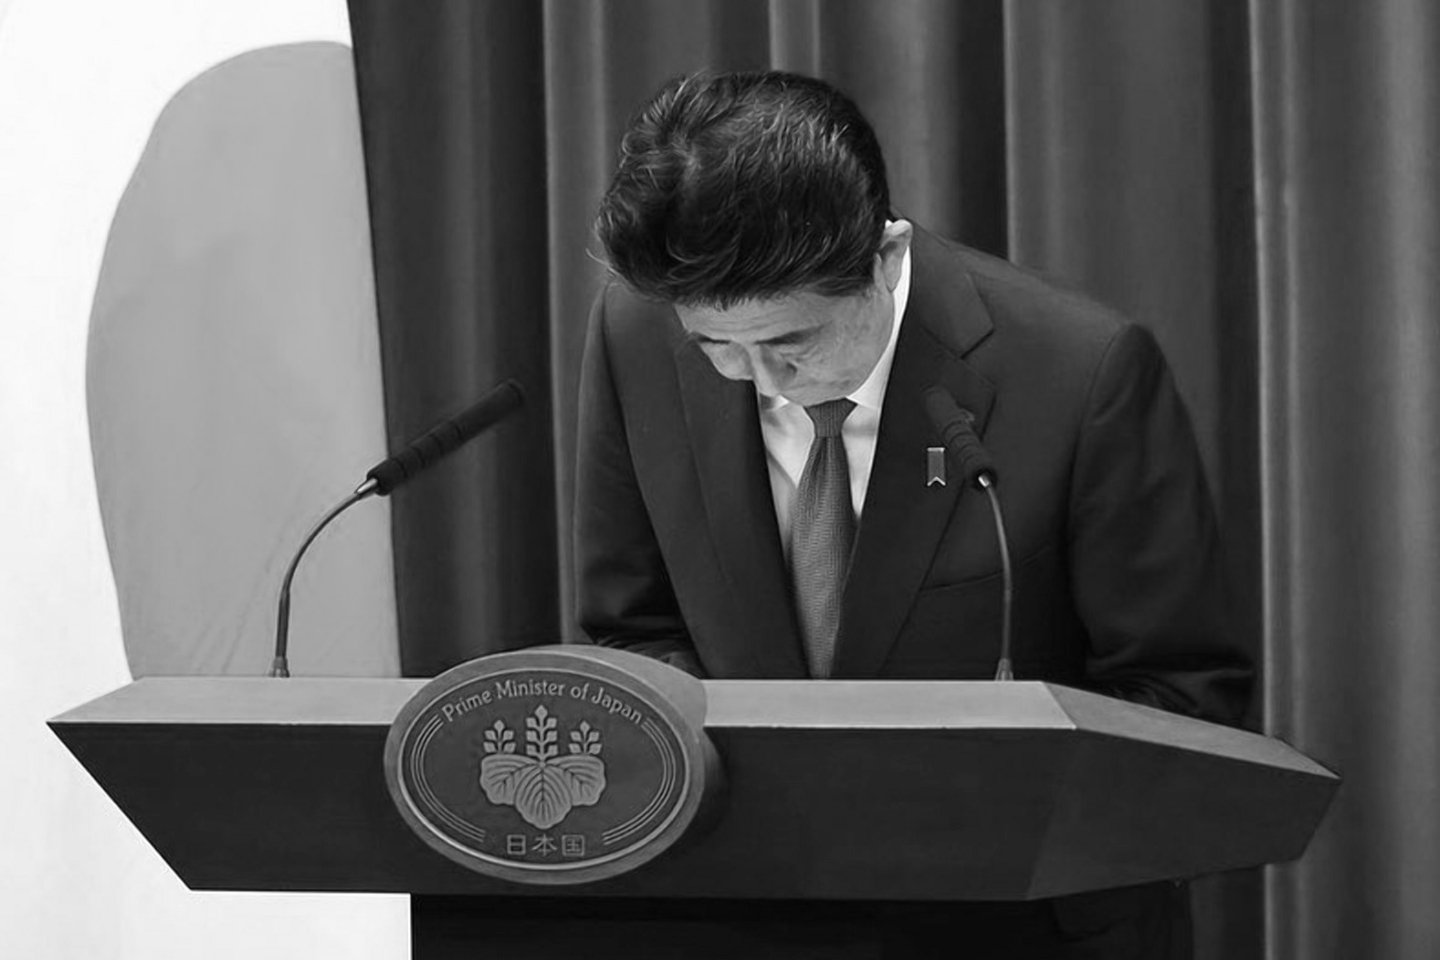 Новости мира / Политика в мире / Государственные похороны Синдзо Абэ запланированы на осень